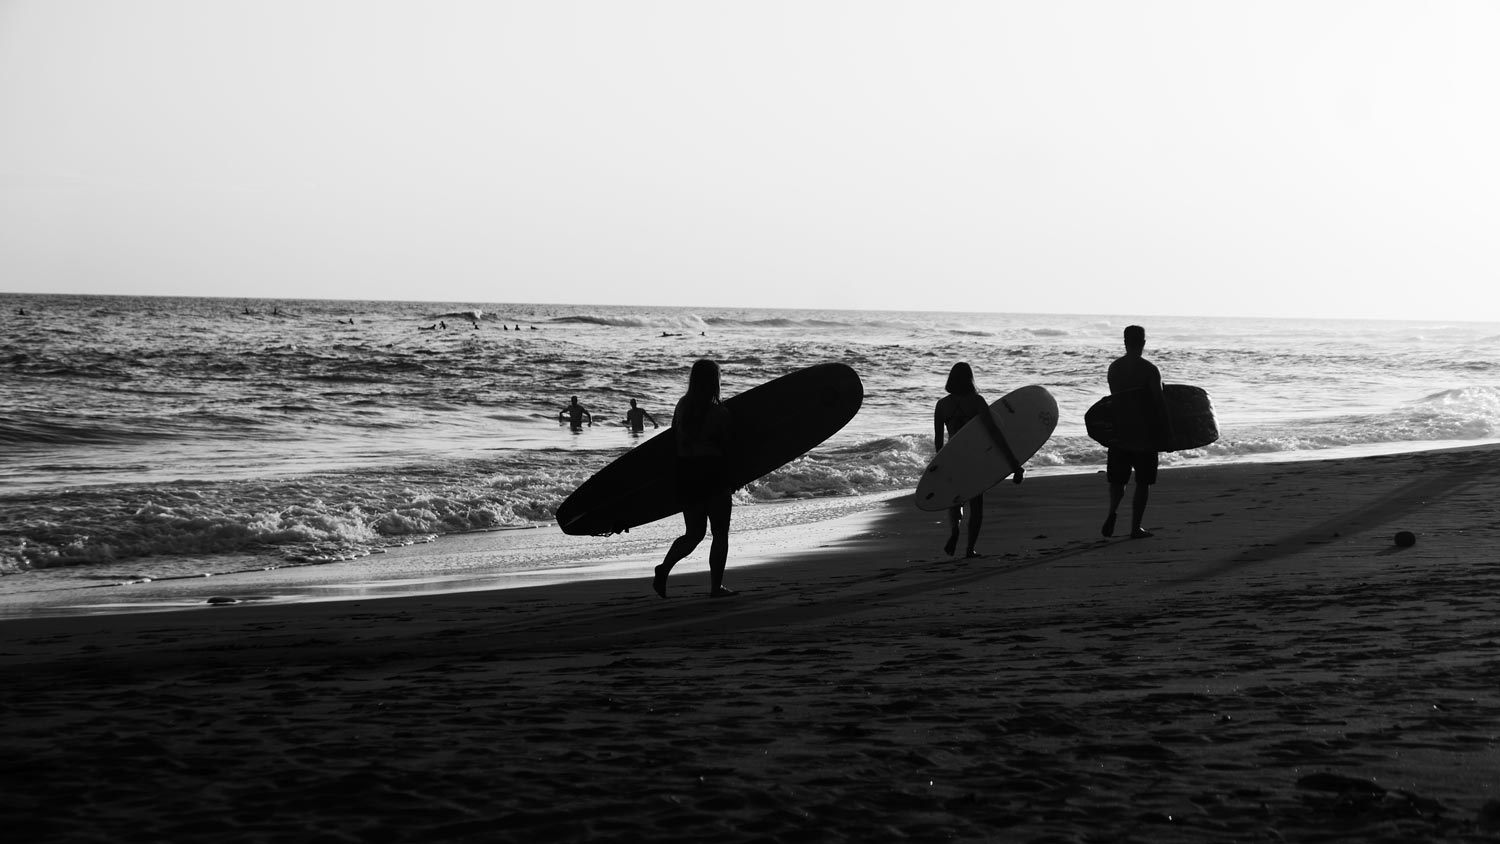 Surfers at El Sunzal beach, El Tunco village, El Salvador